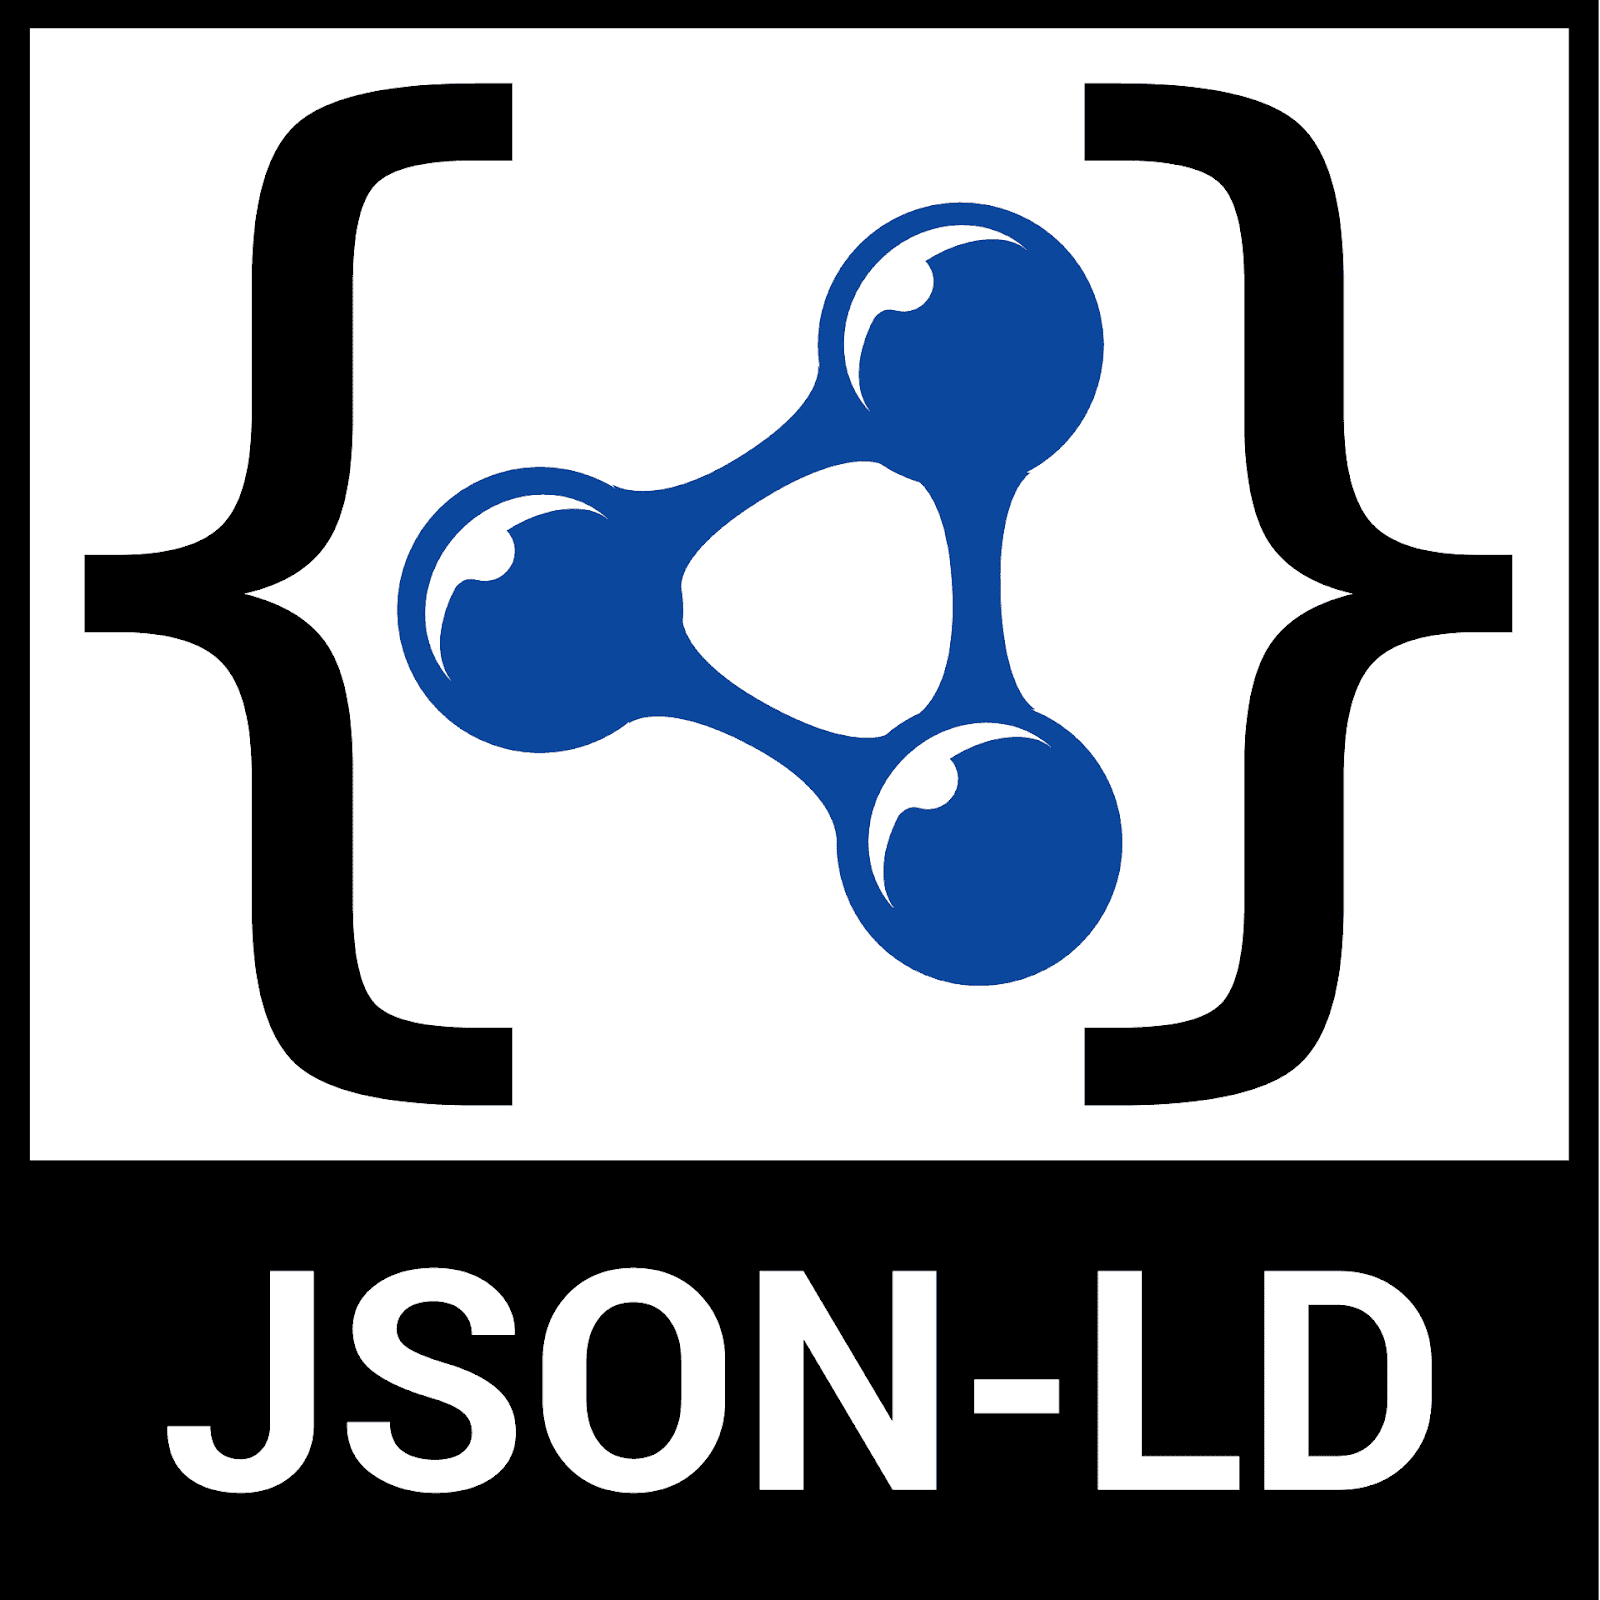 JSON-LDのロゴマーク